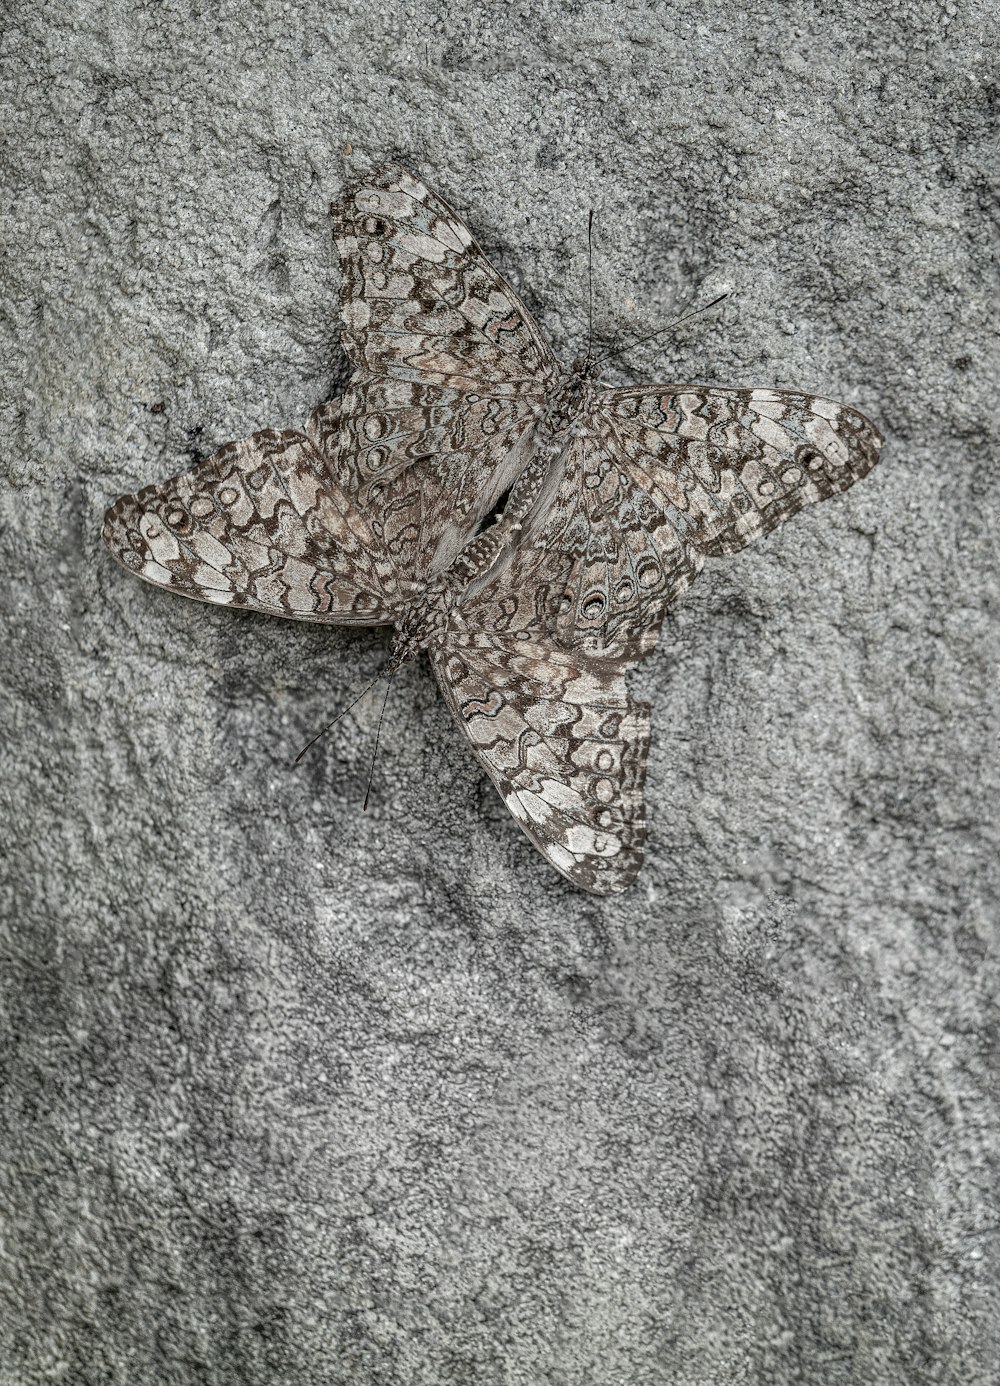 ein Schmetterling, der auf einem Felsen sitzt